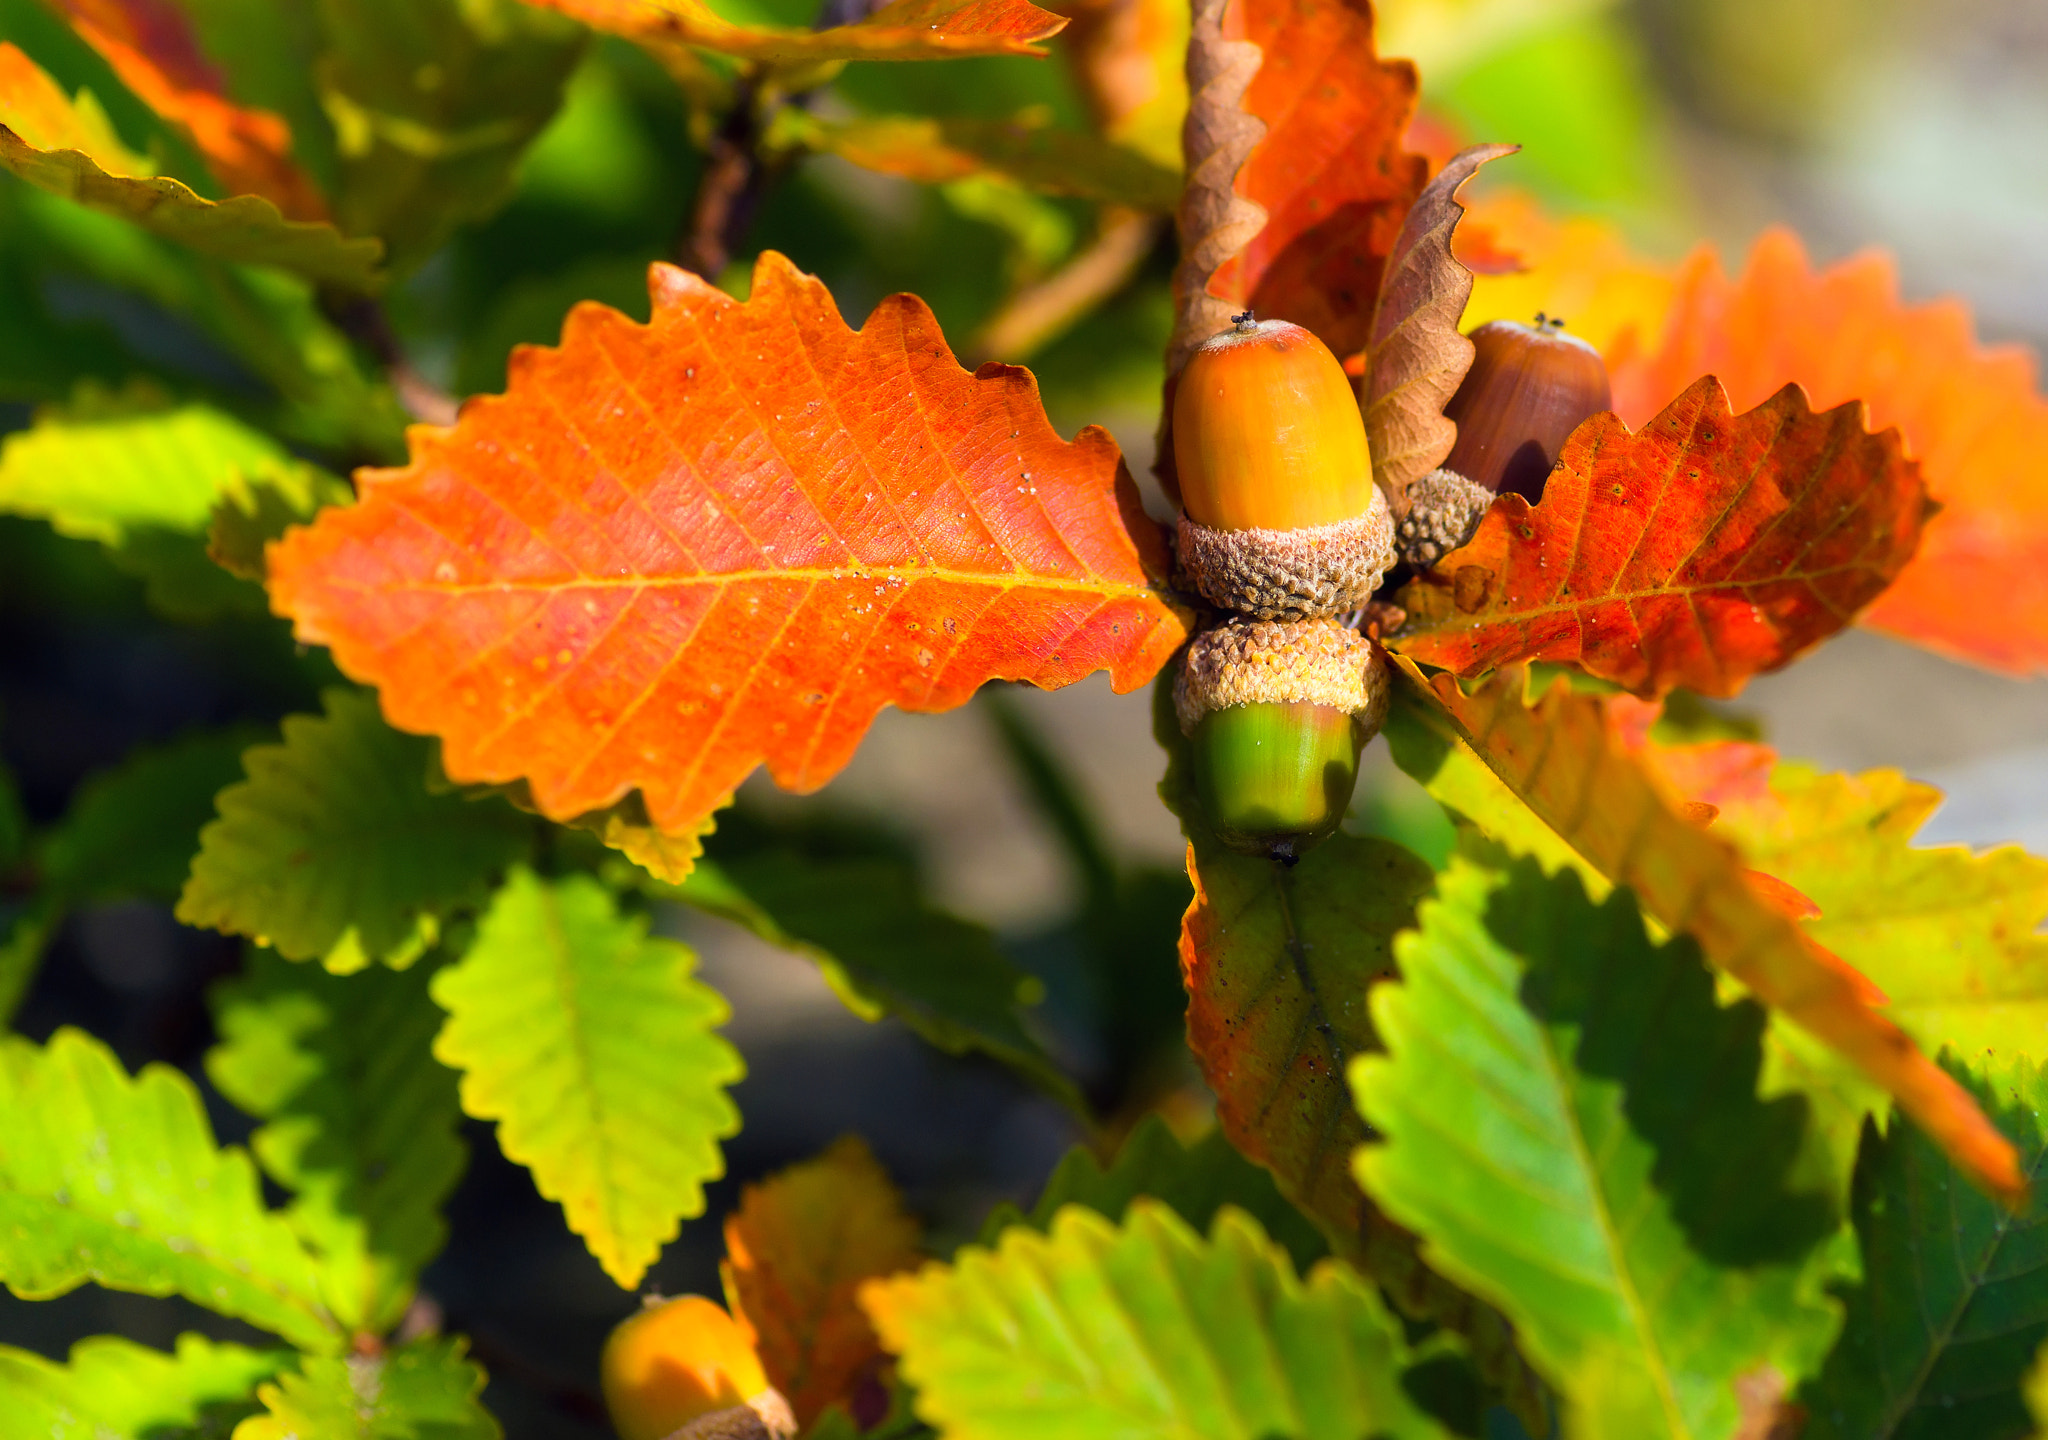 Sony Alpha DSLR-A850 sample photo. Autumn acorns. photography